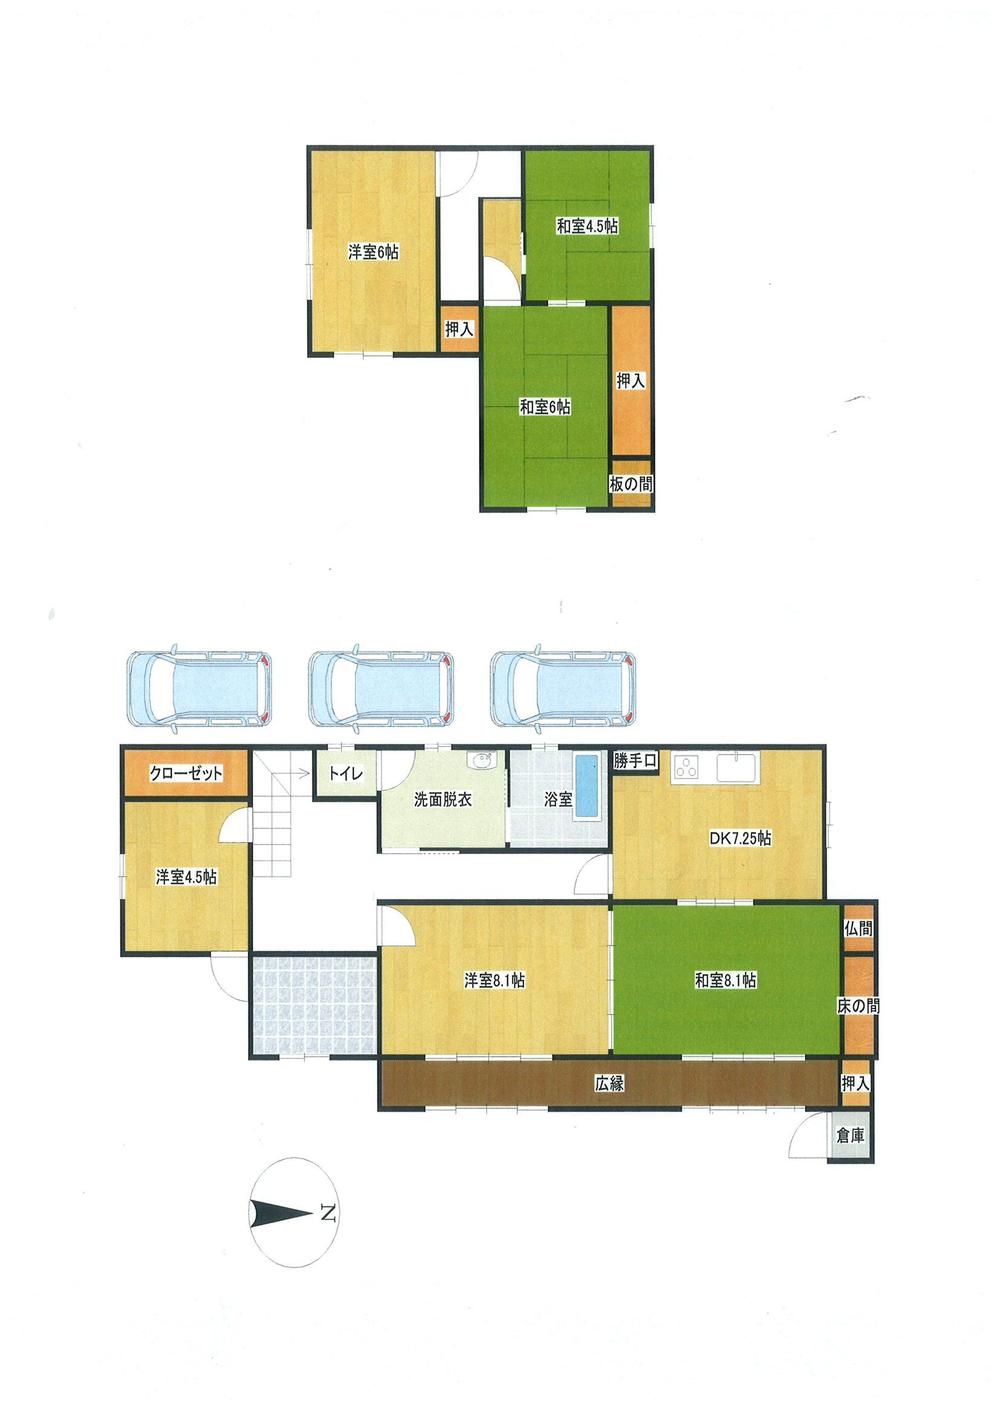 Floor plan. 15 million yen, 6DK, Land area 188.05 sq m , Building area 114.74 sq m